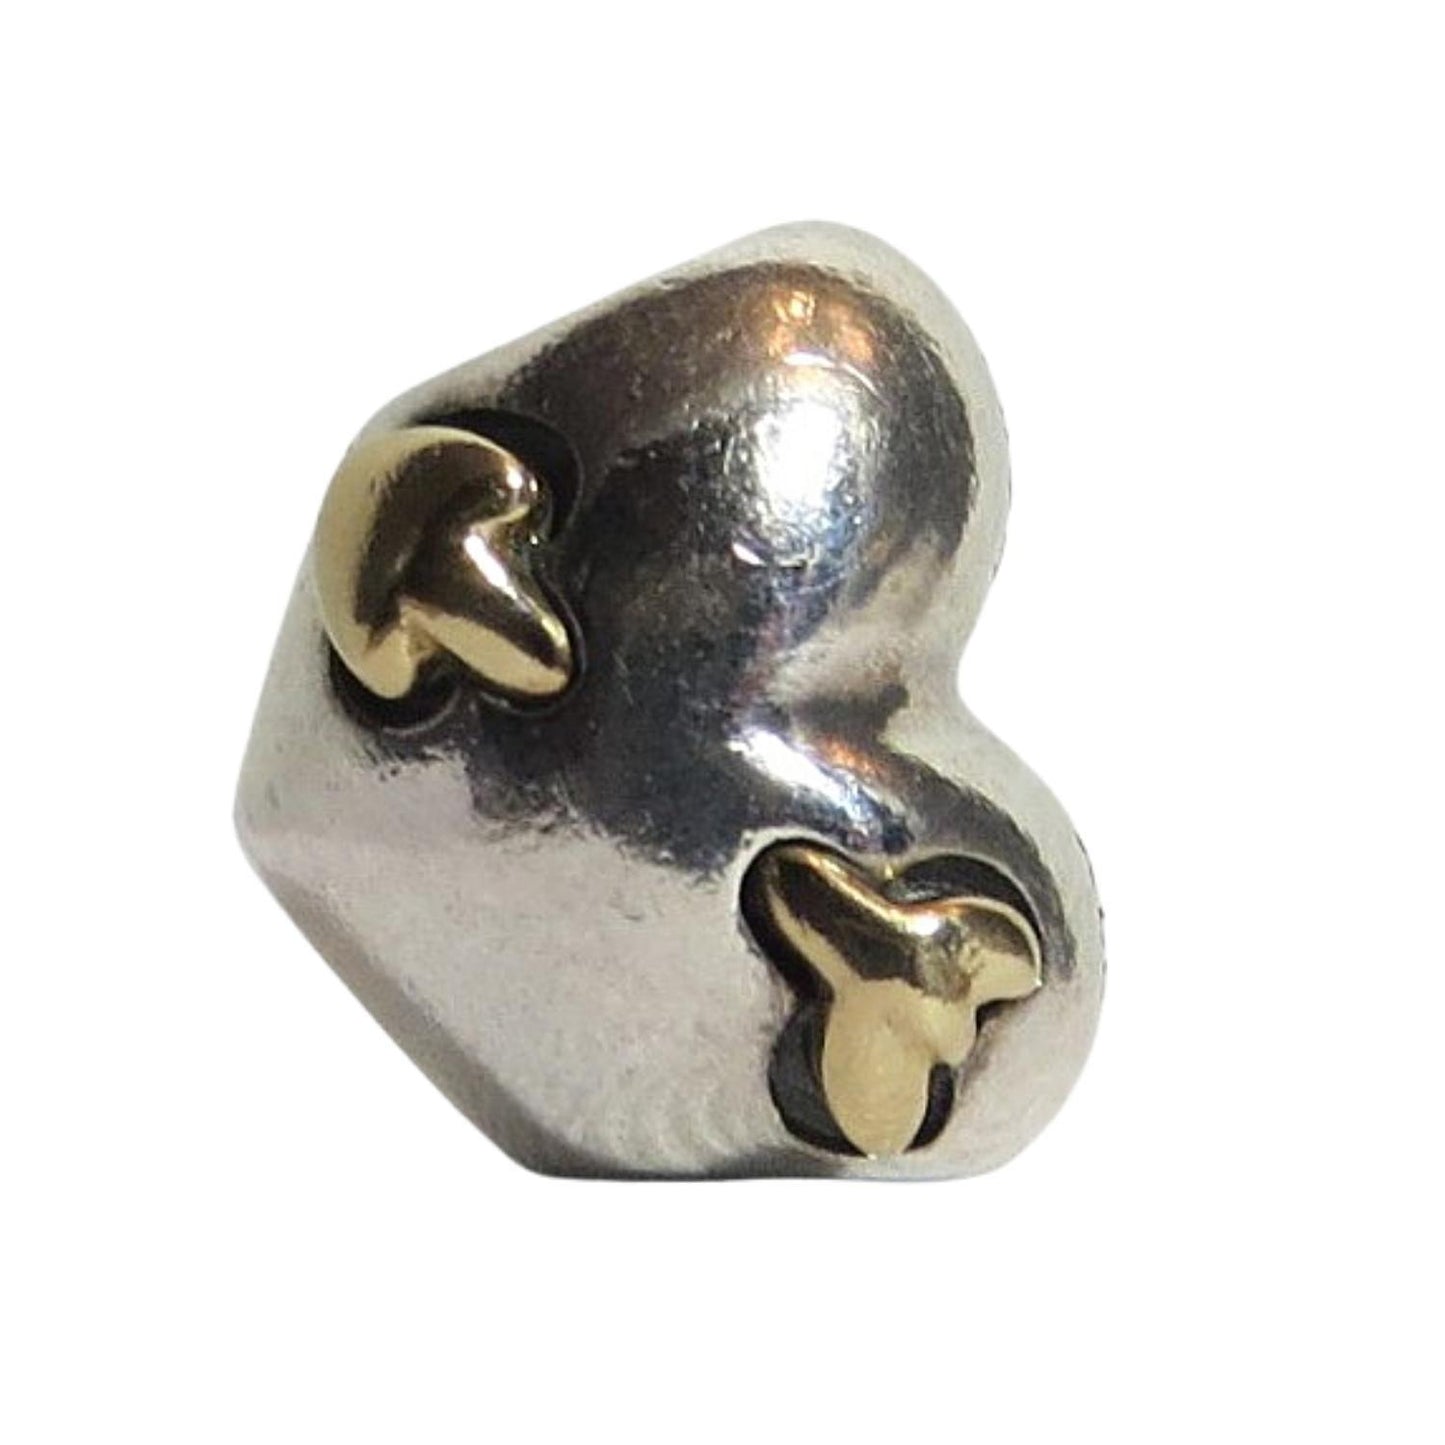 PANDORA 791171 Love Struck - Women's Charm - Sterling Silver Heart Pierced by 14k Gold Arrow of Love - Charming Jilly